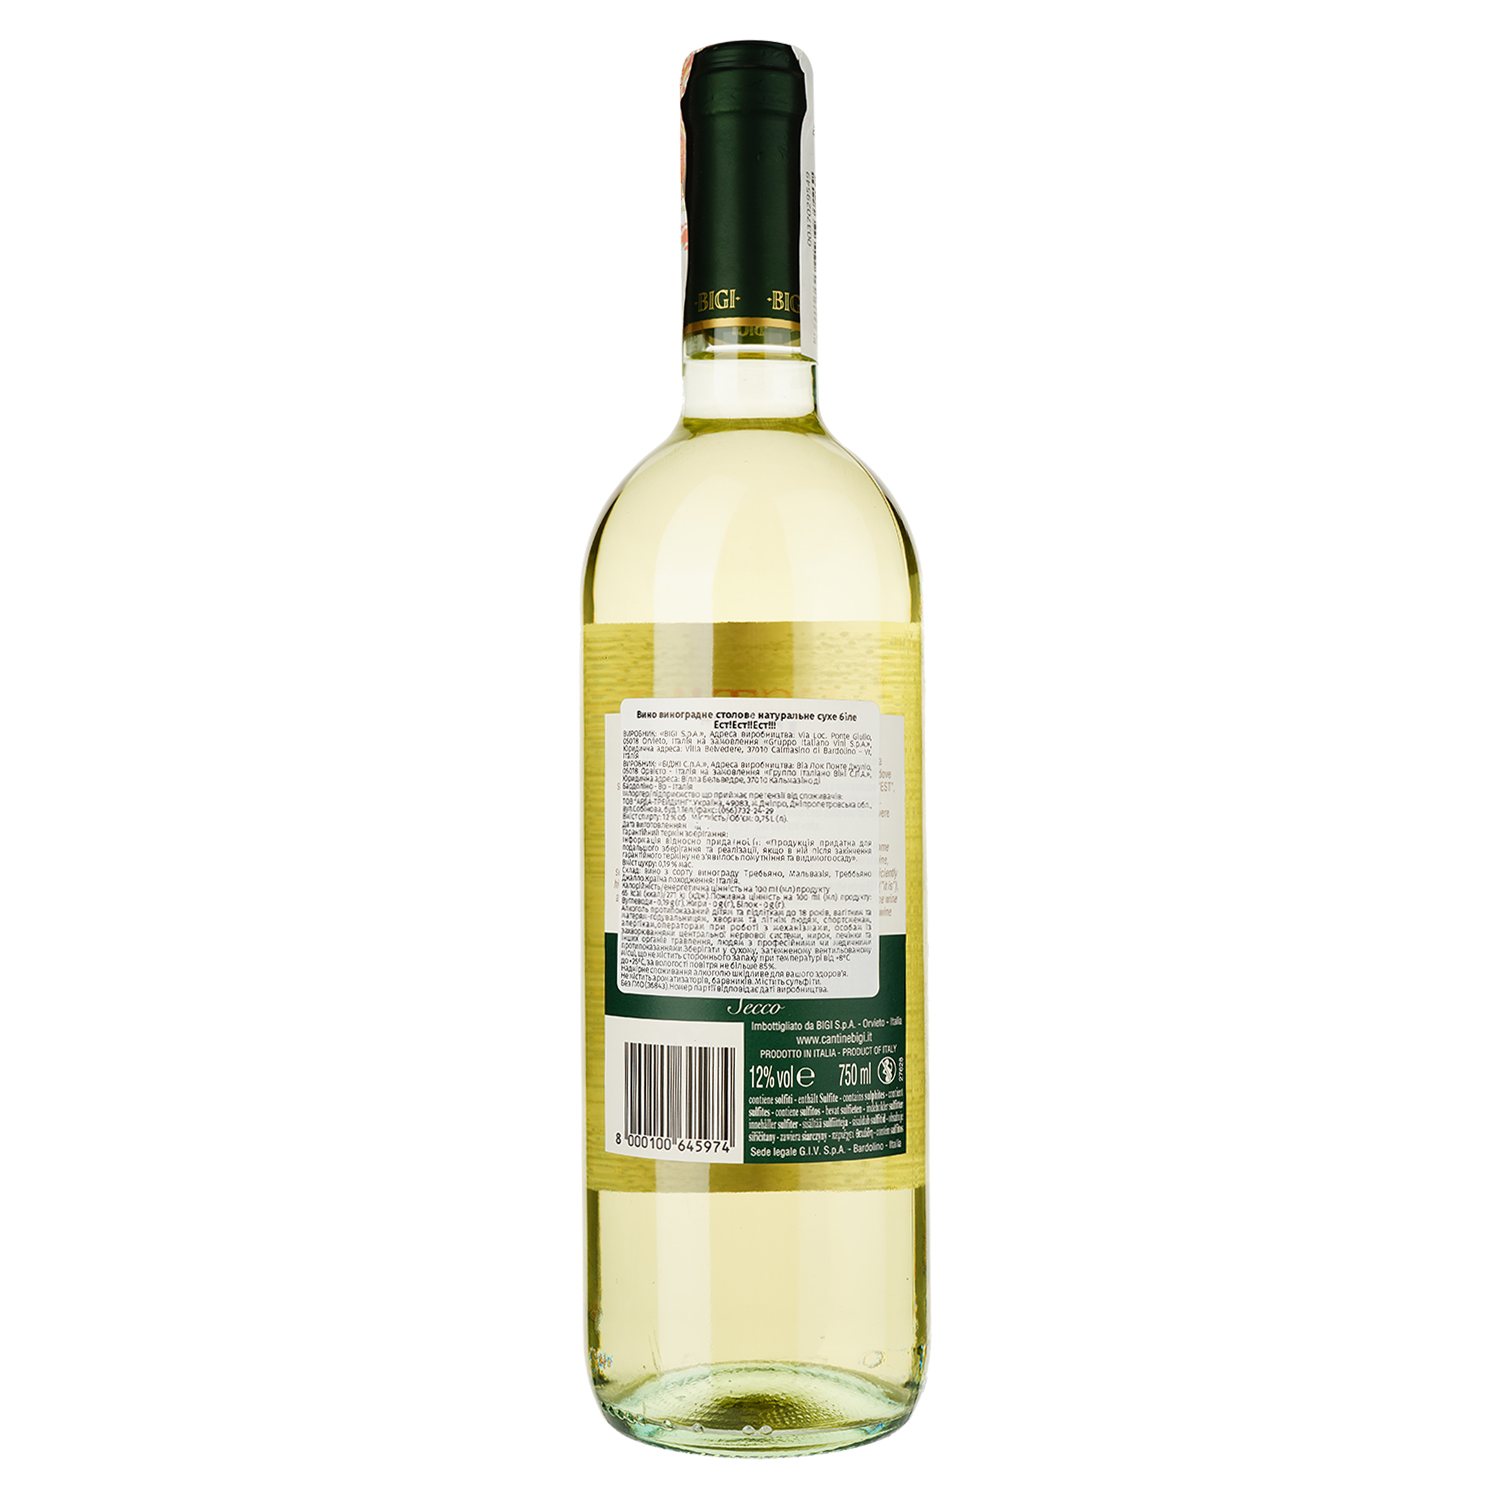 Вино Bigi Est! Est!! Est! di Montefiascone, біле, сухе, 12,5%, 0,75 л (36843) - фото 2